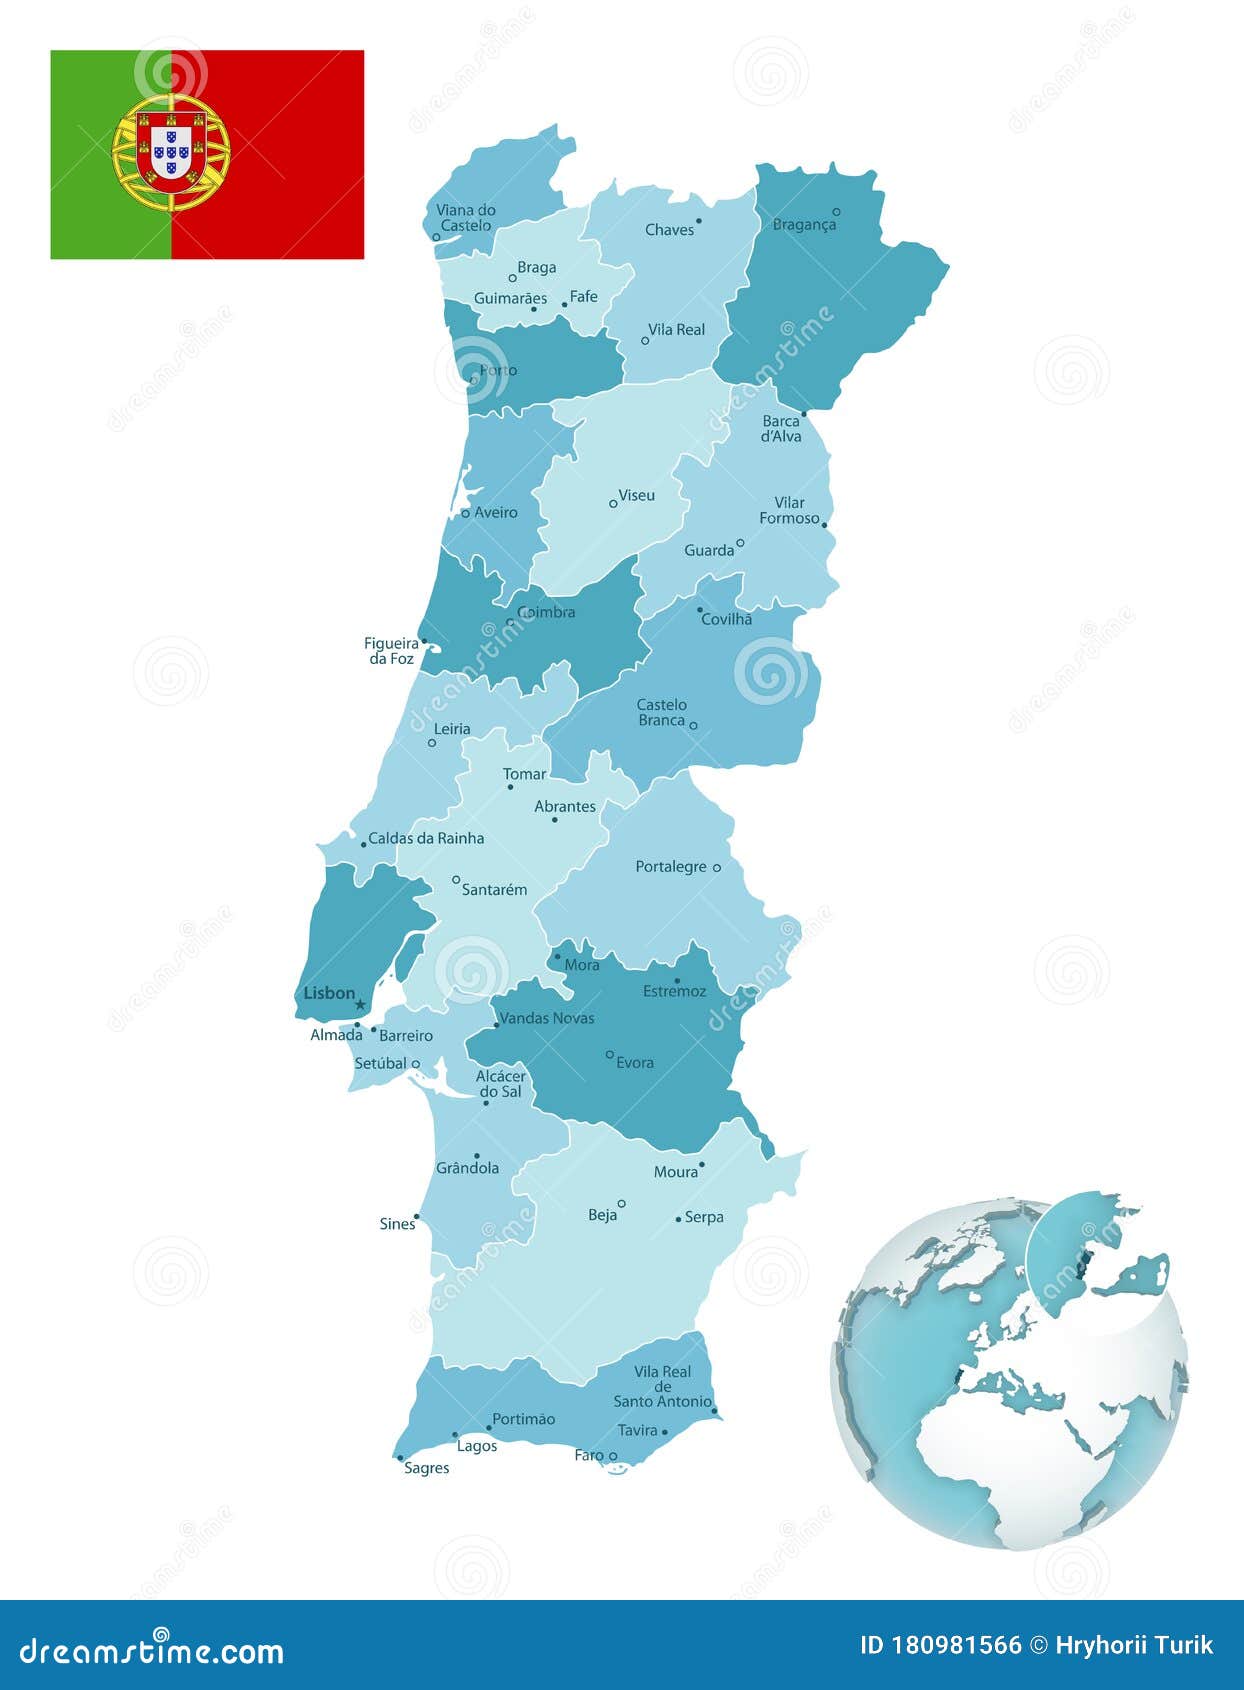 Divisões Políticas de Portugal